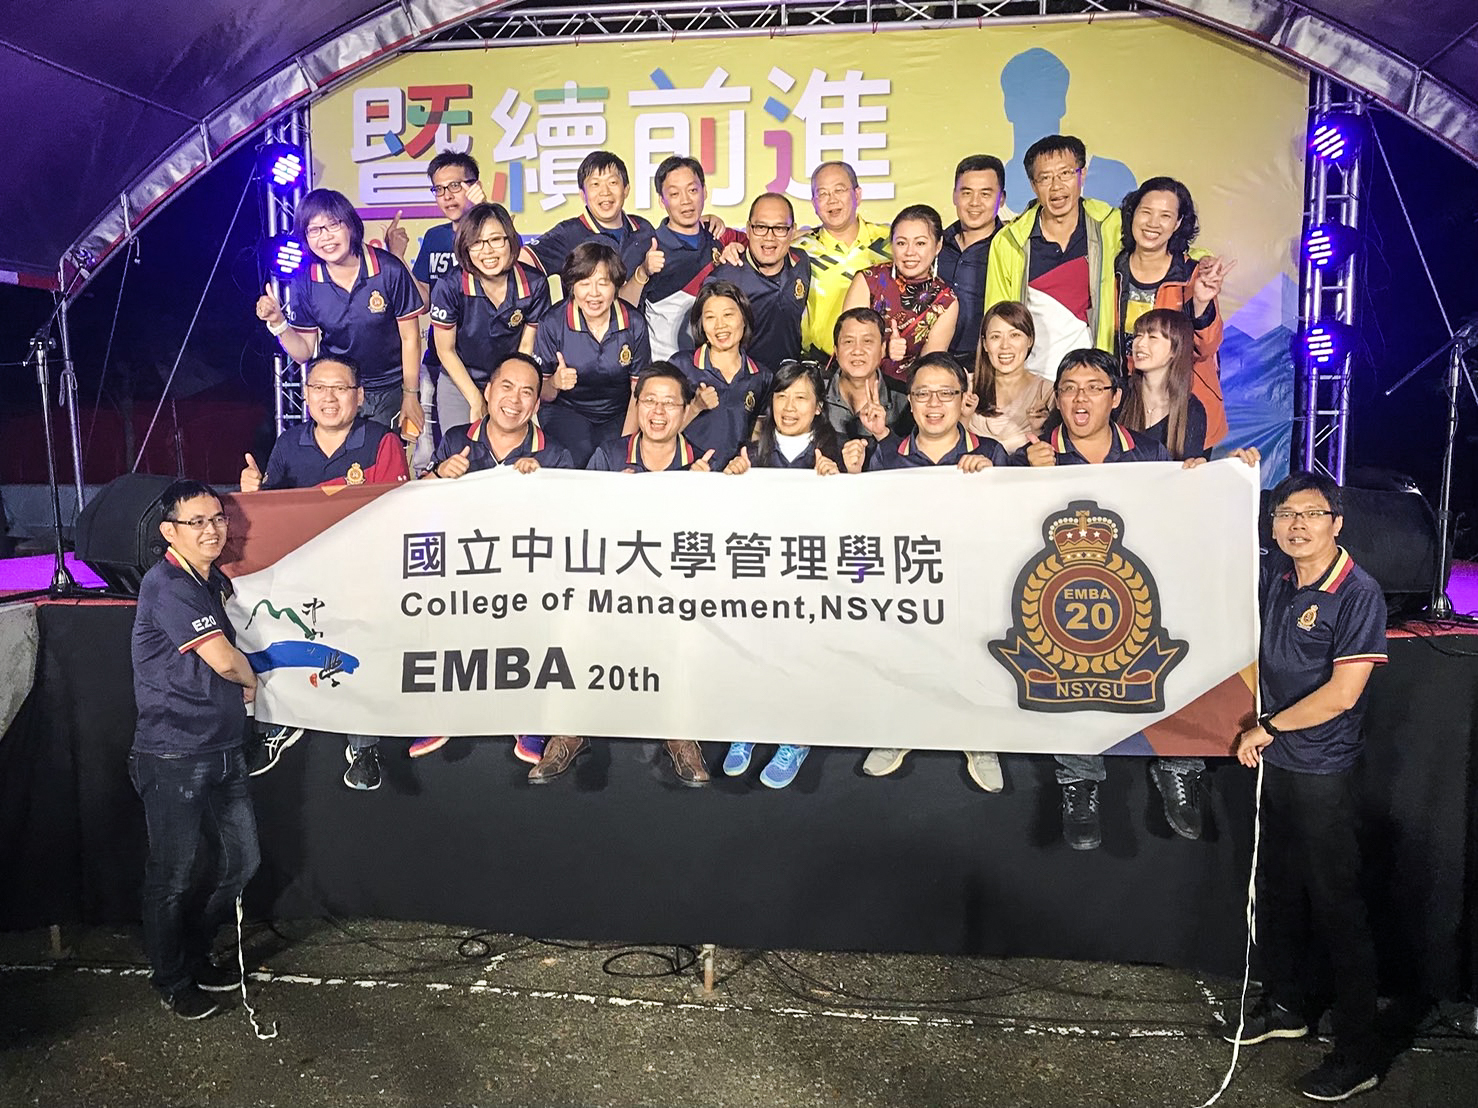 中山EMBA鼓勵學員與家人共同參與各類體育競技(此圖為馬拉松競賽)，熱衷體育賽事。